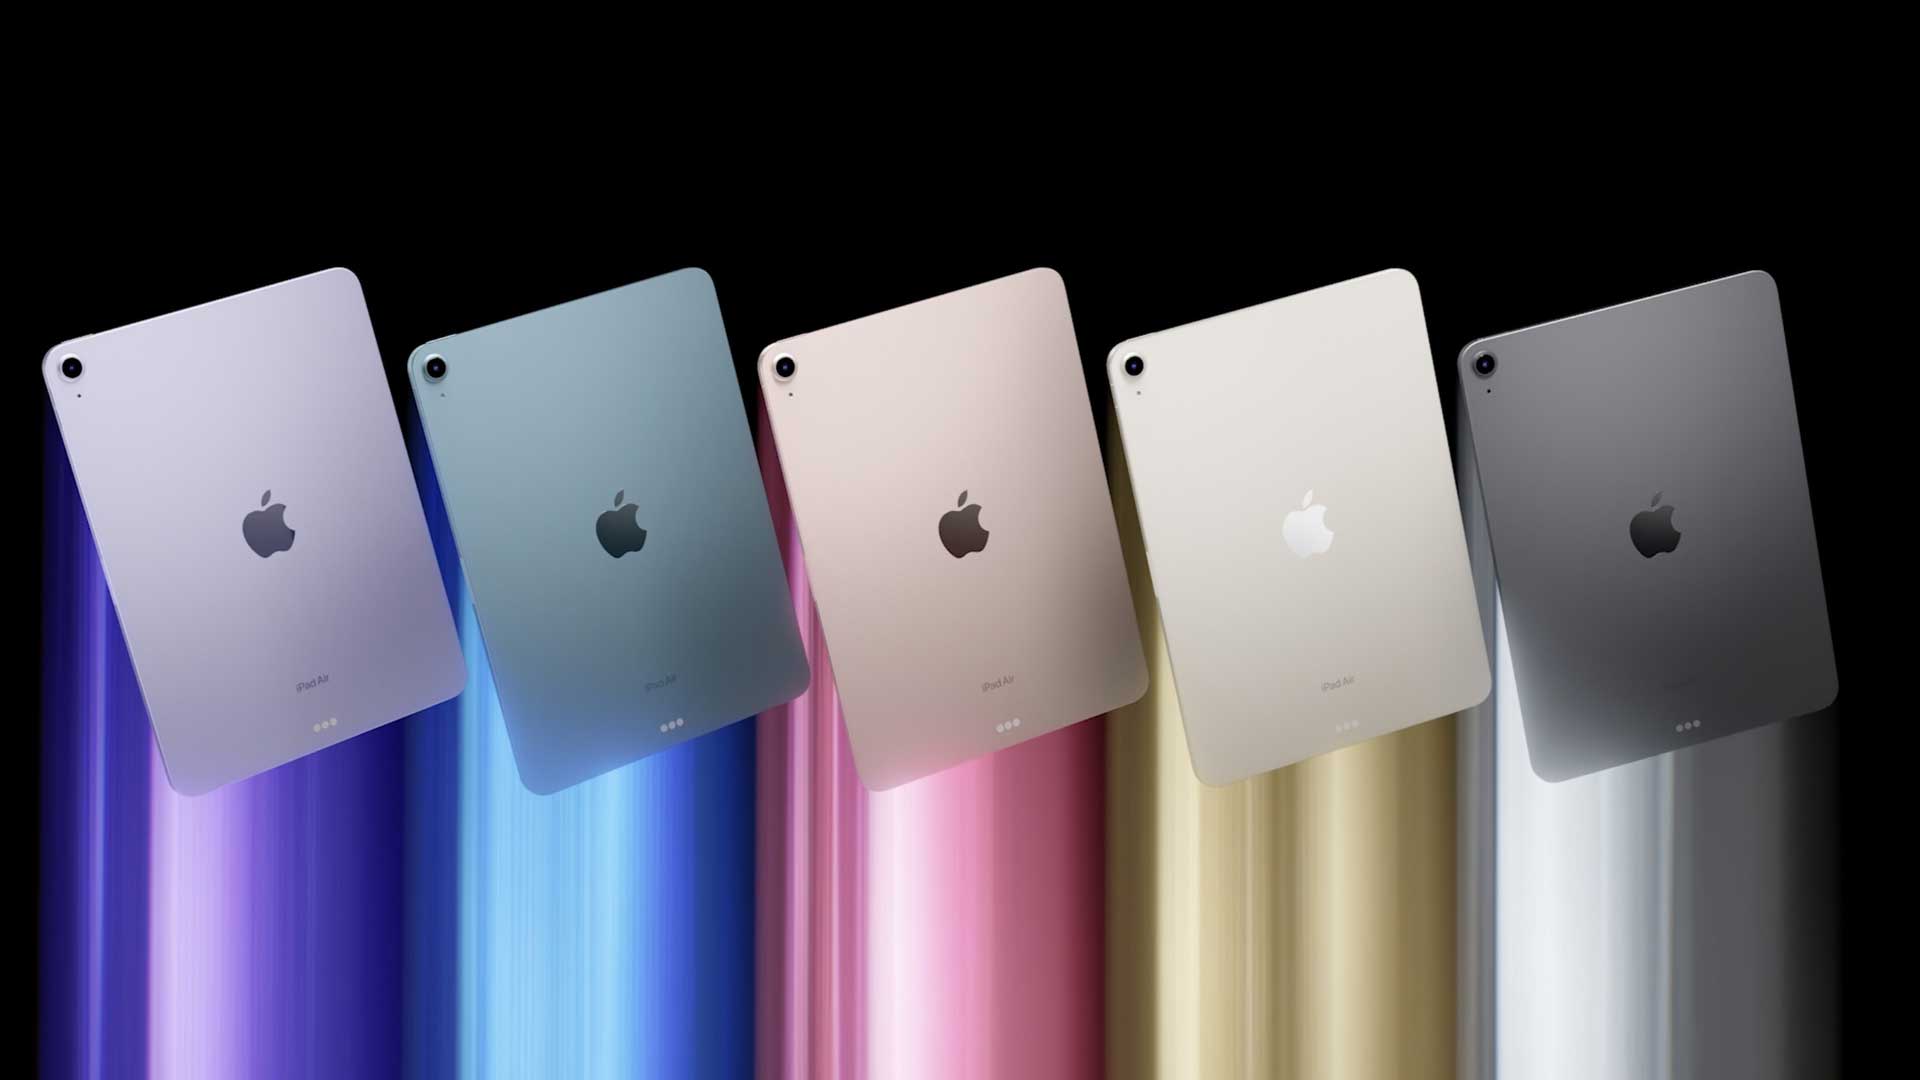 رونمایی رسمی از آیپد ایر 5 با تراشه M1 در رویداد شرکت Apple